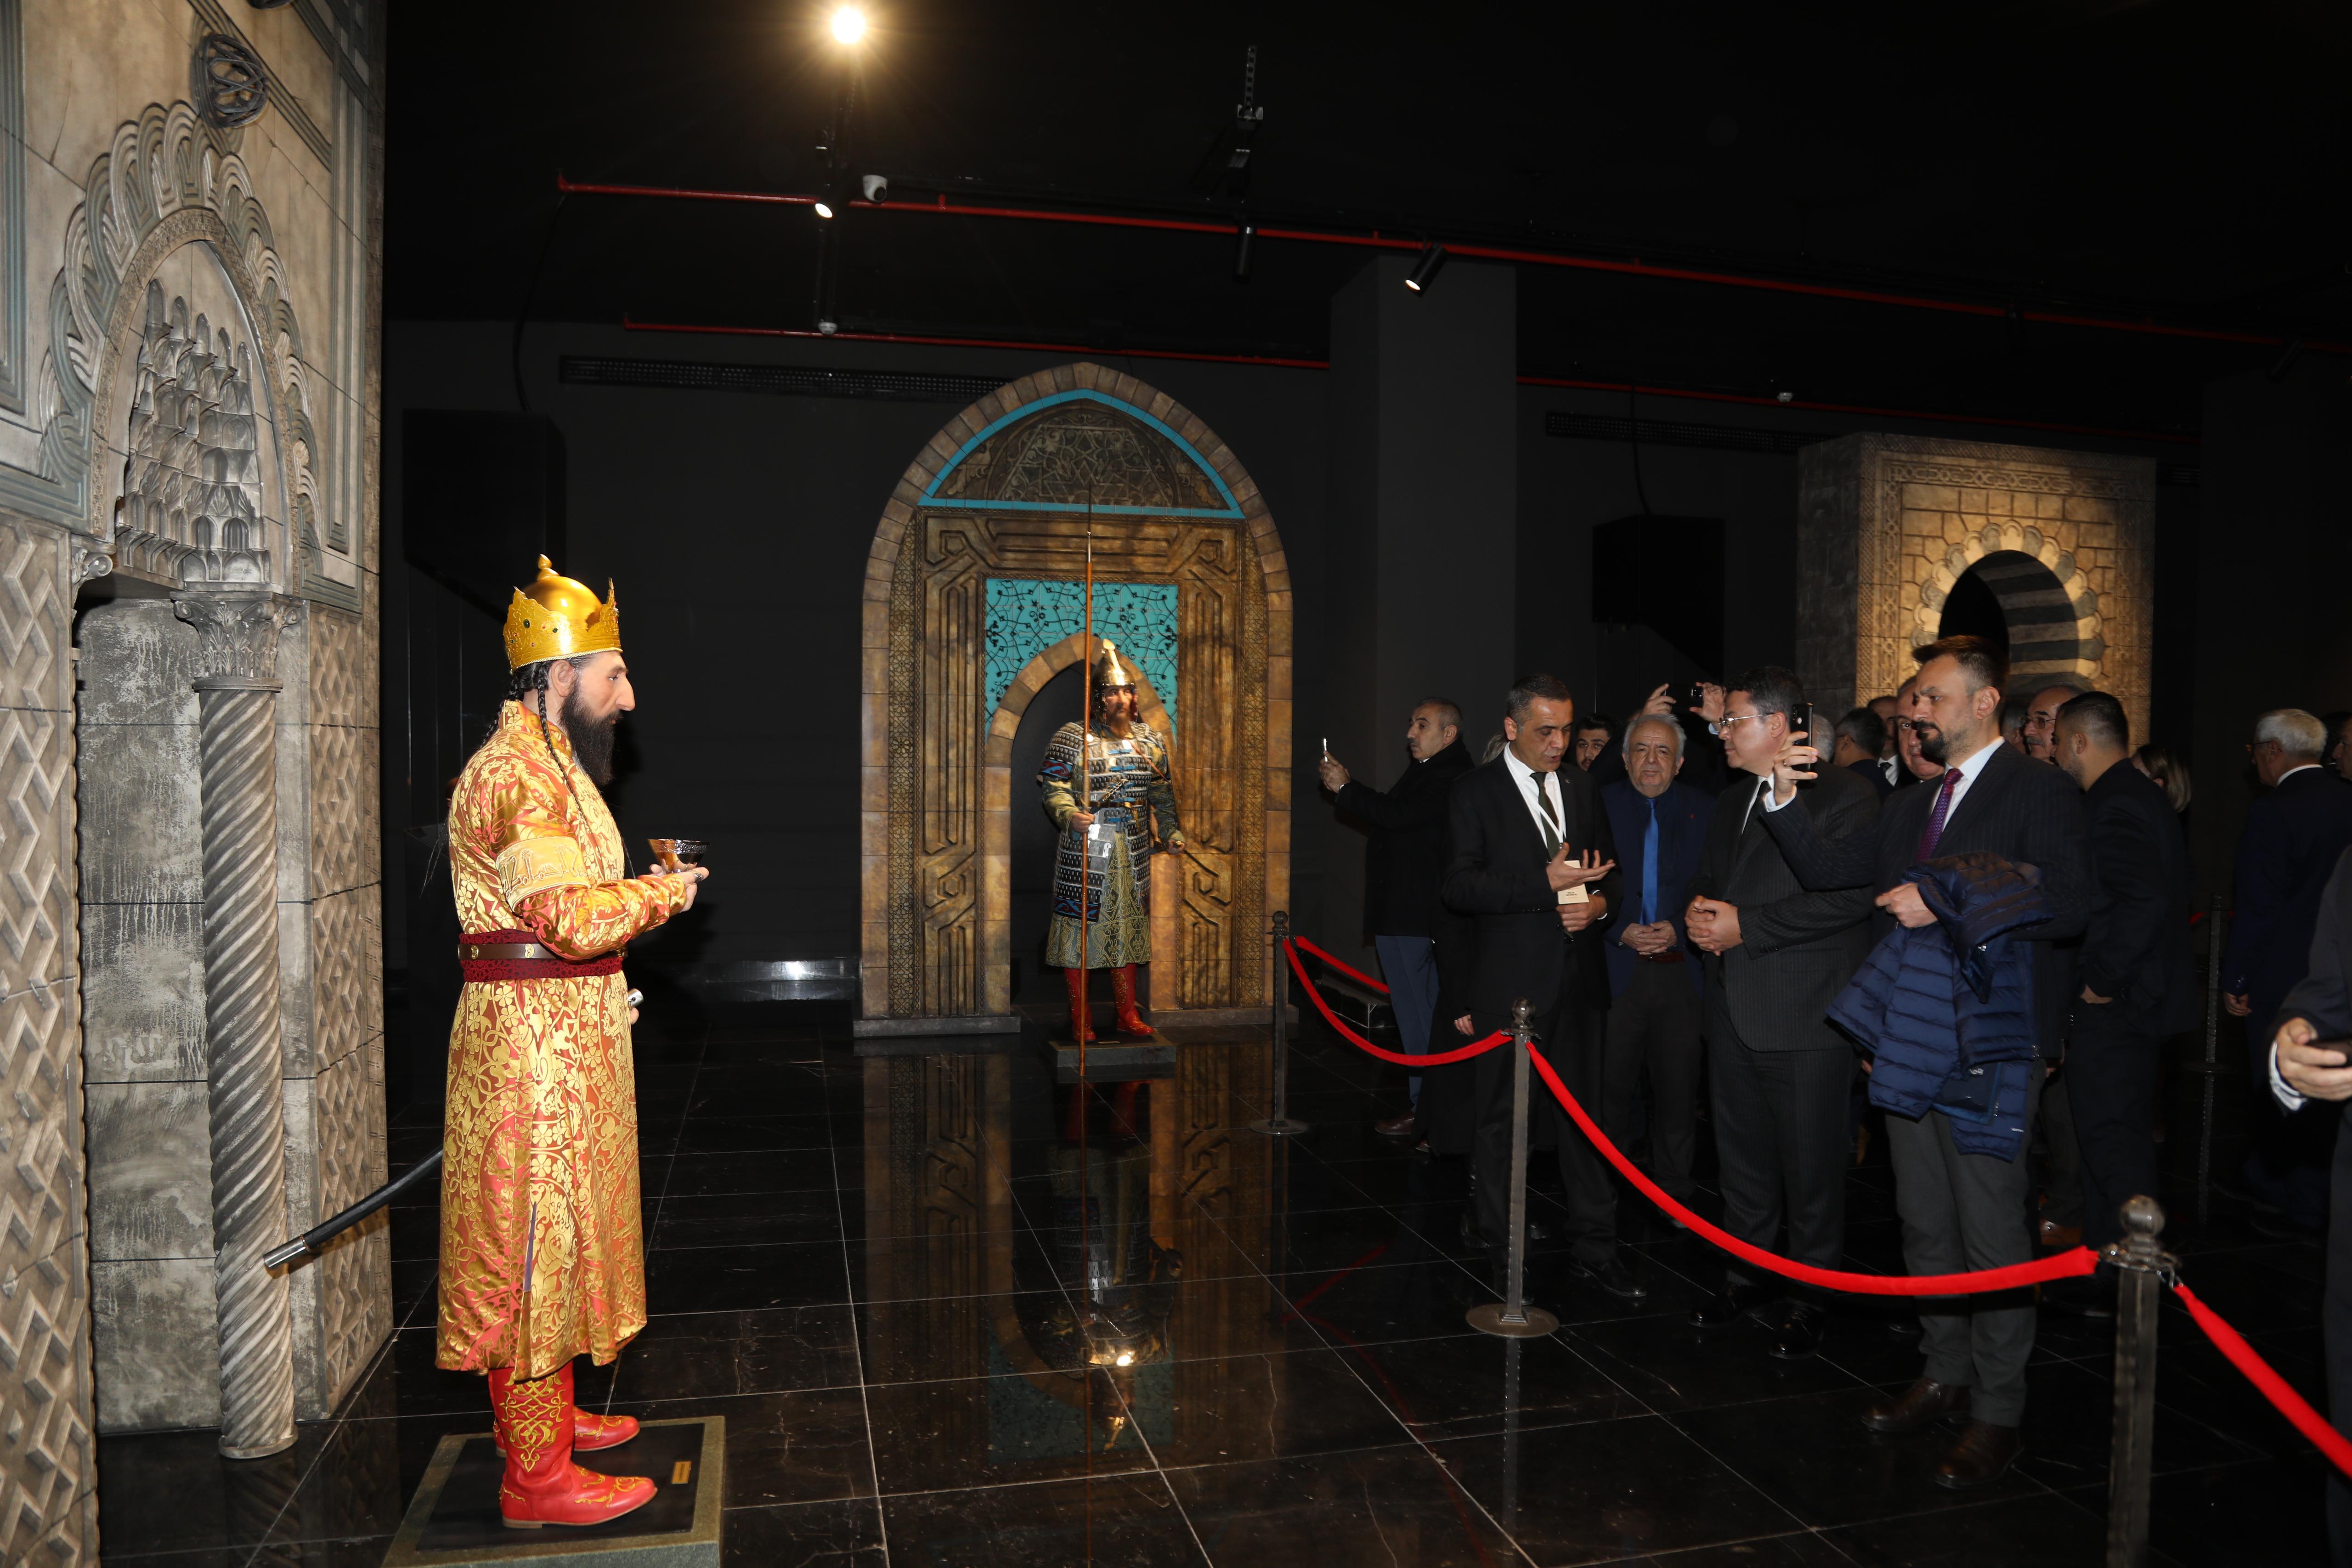 Başkan Altay: ”Proje Konya’nın tarihine ve kültürüne ışık tutacak”